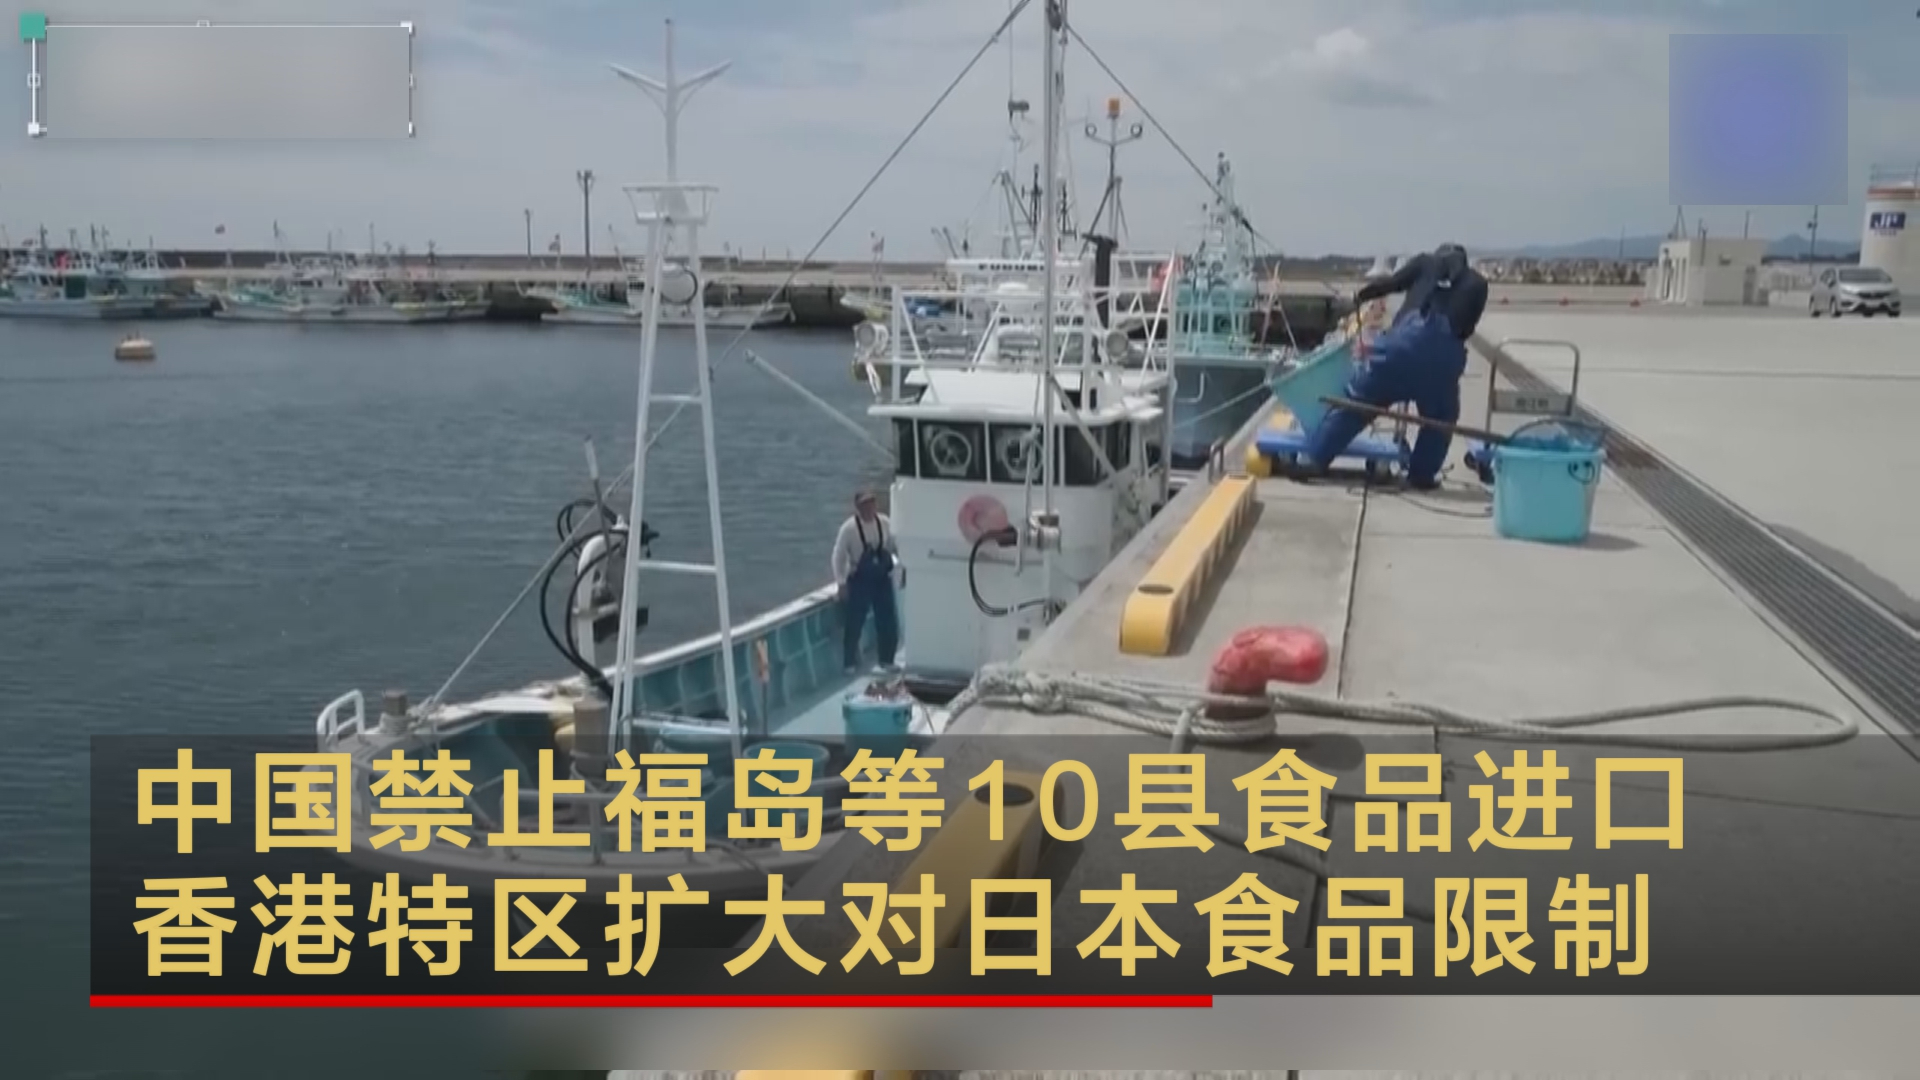 中国禁止福岛等10县食品进口 香港特区扩大对日本食品限制